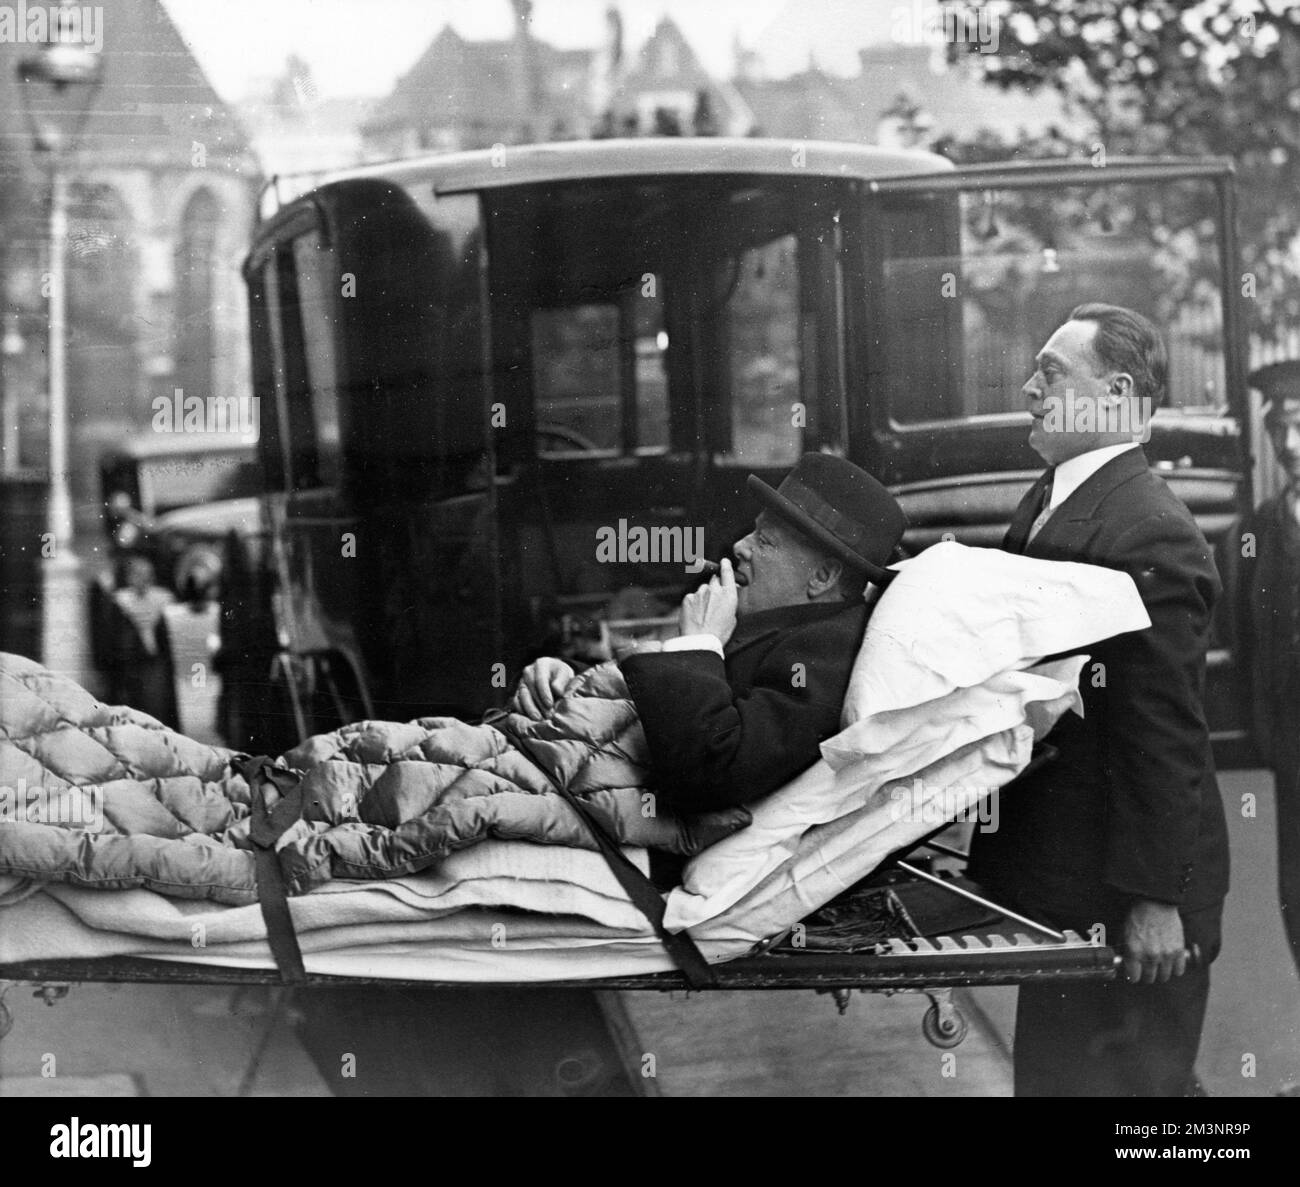 Profilo di Winston Churchill (1874-1965), politico inglese, avendo un puff cheeky sul suo sigaro mentre è teso dal suo appartamento di Londra ad una casa di cura del West End via ambulanza, essendo stato preso ammalato con paratifoide. Data: 1932 Foto Stock